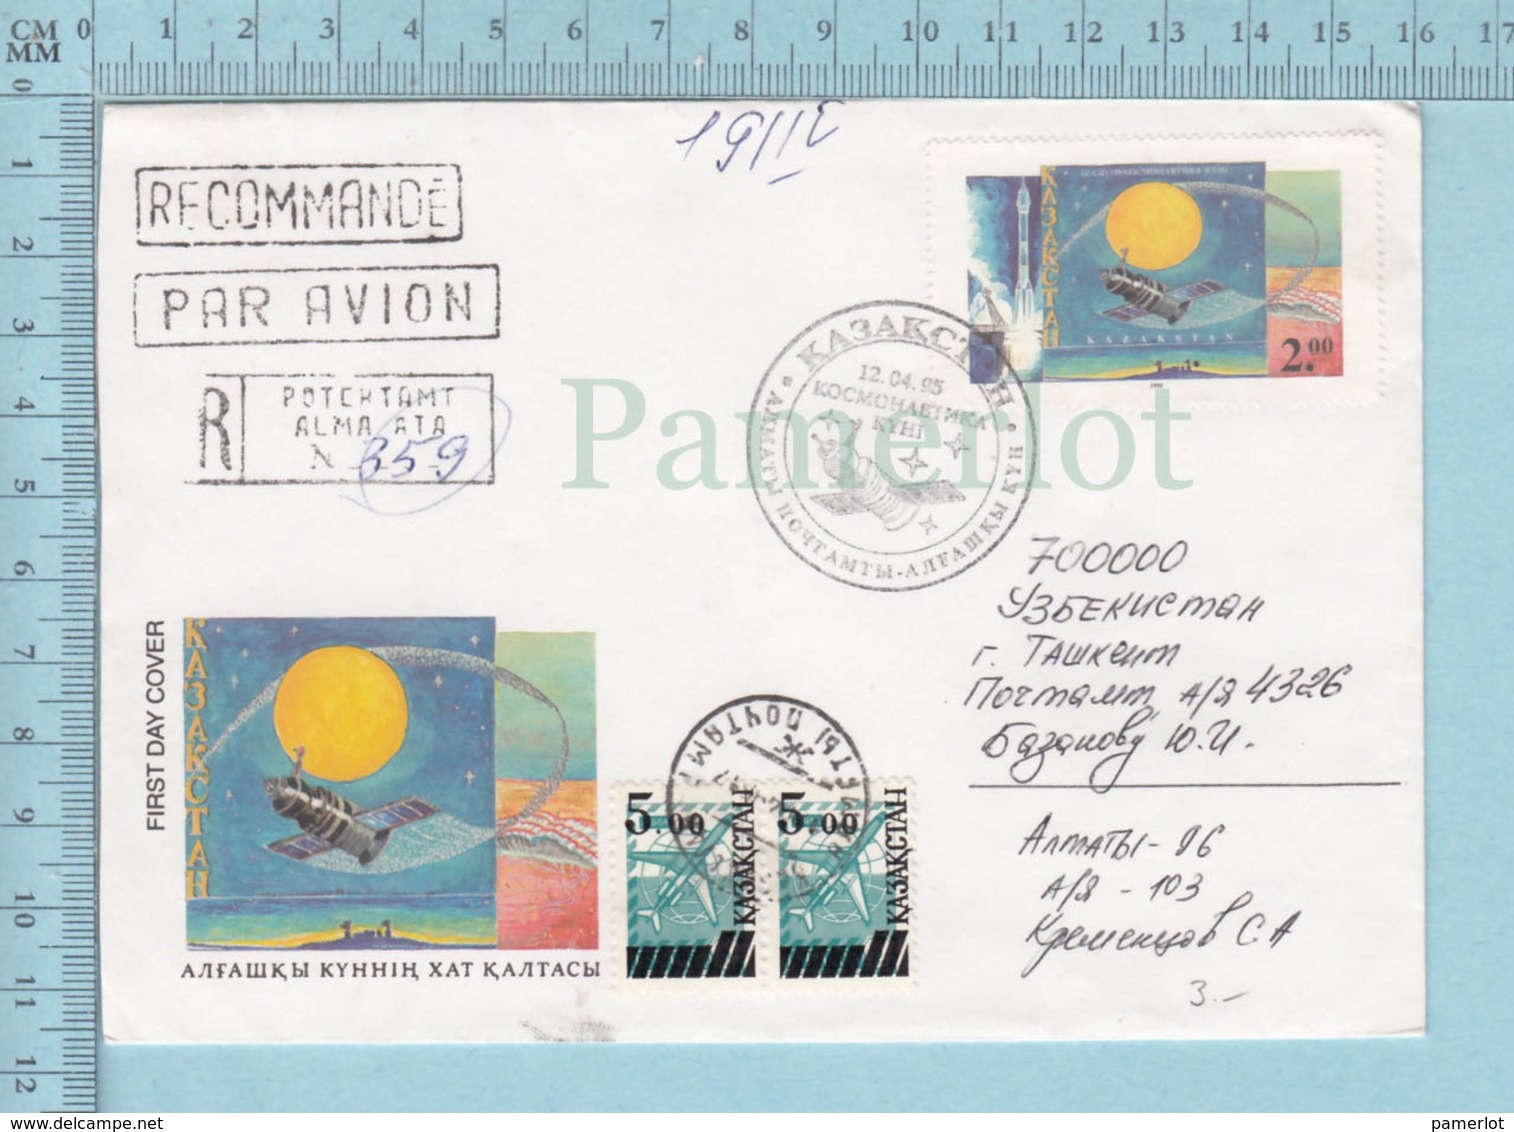 Kazakstan - PPJ, FDC, Space , Espace, 1995, Recommandé, Par Avion, 4 Timbres, Stamps, FDC + 2 X Overprint Stamps , - Russie & URSS